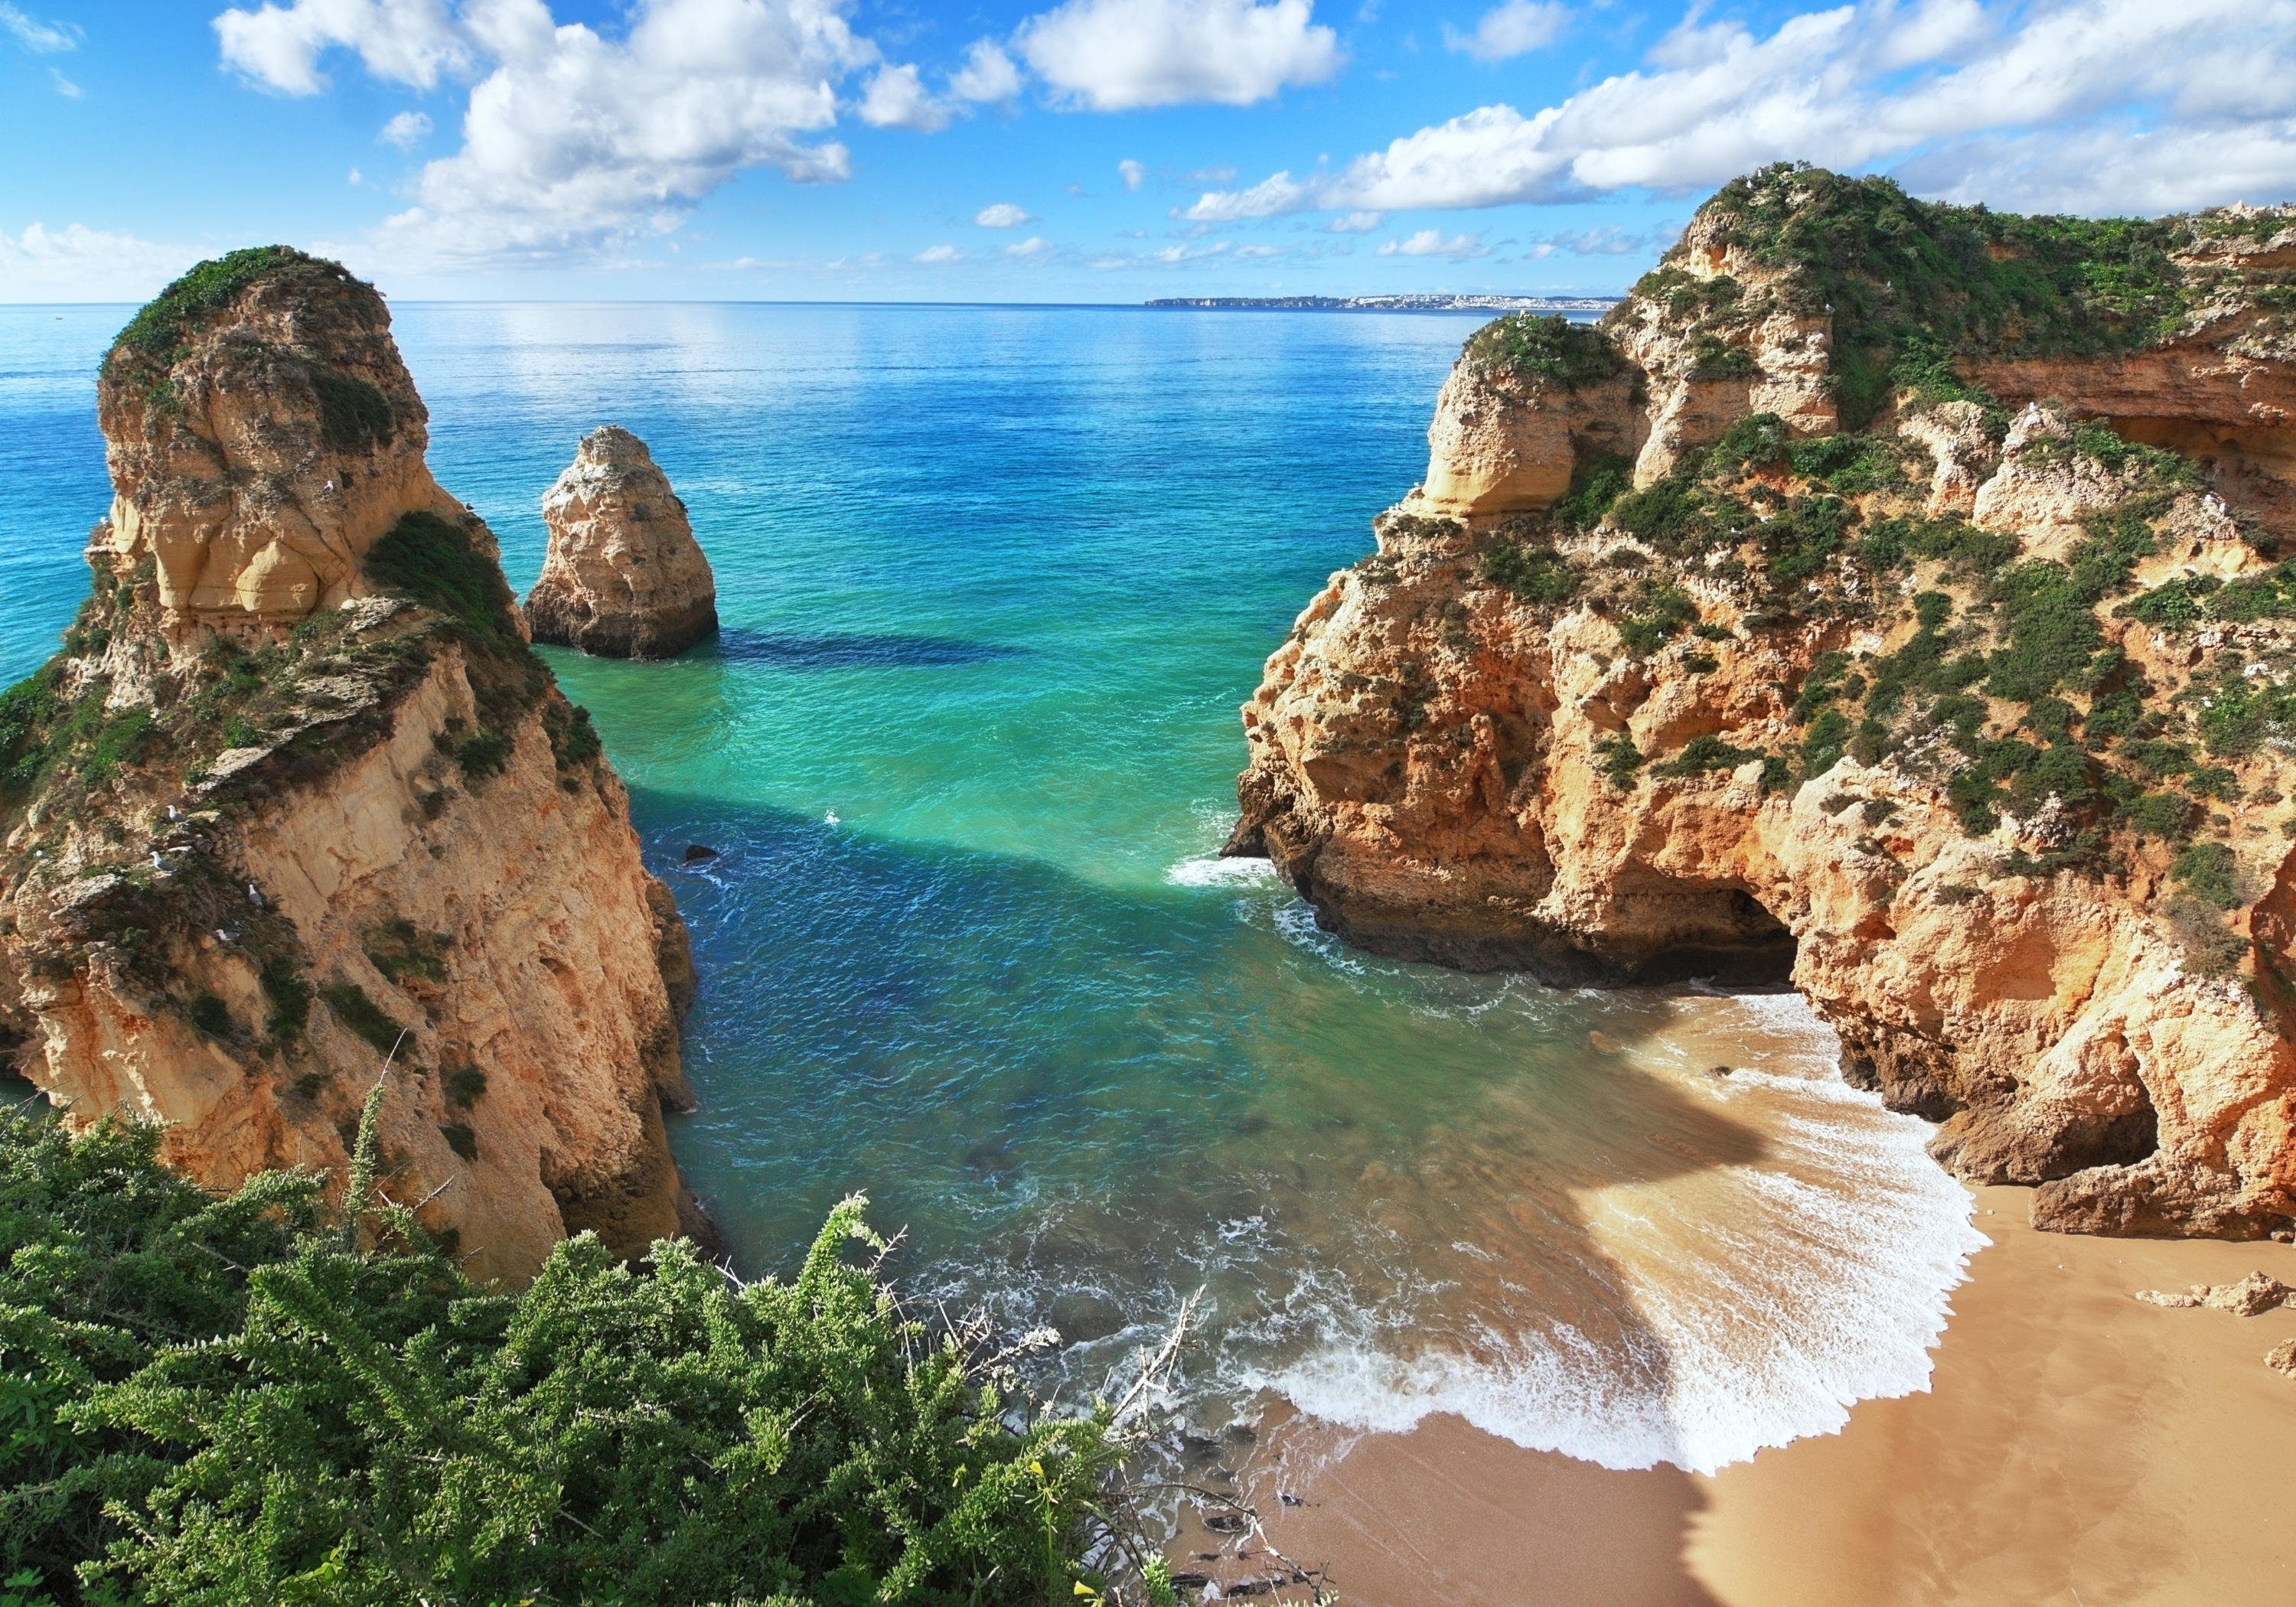 wandmotiv24 Fototapete Schöne Aussicht auf die Küste, Portugal, glatt, Wandtapete, Motivtapete, matt, Vliestapete